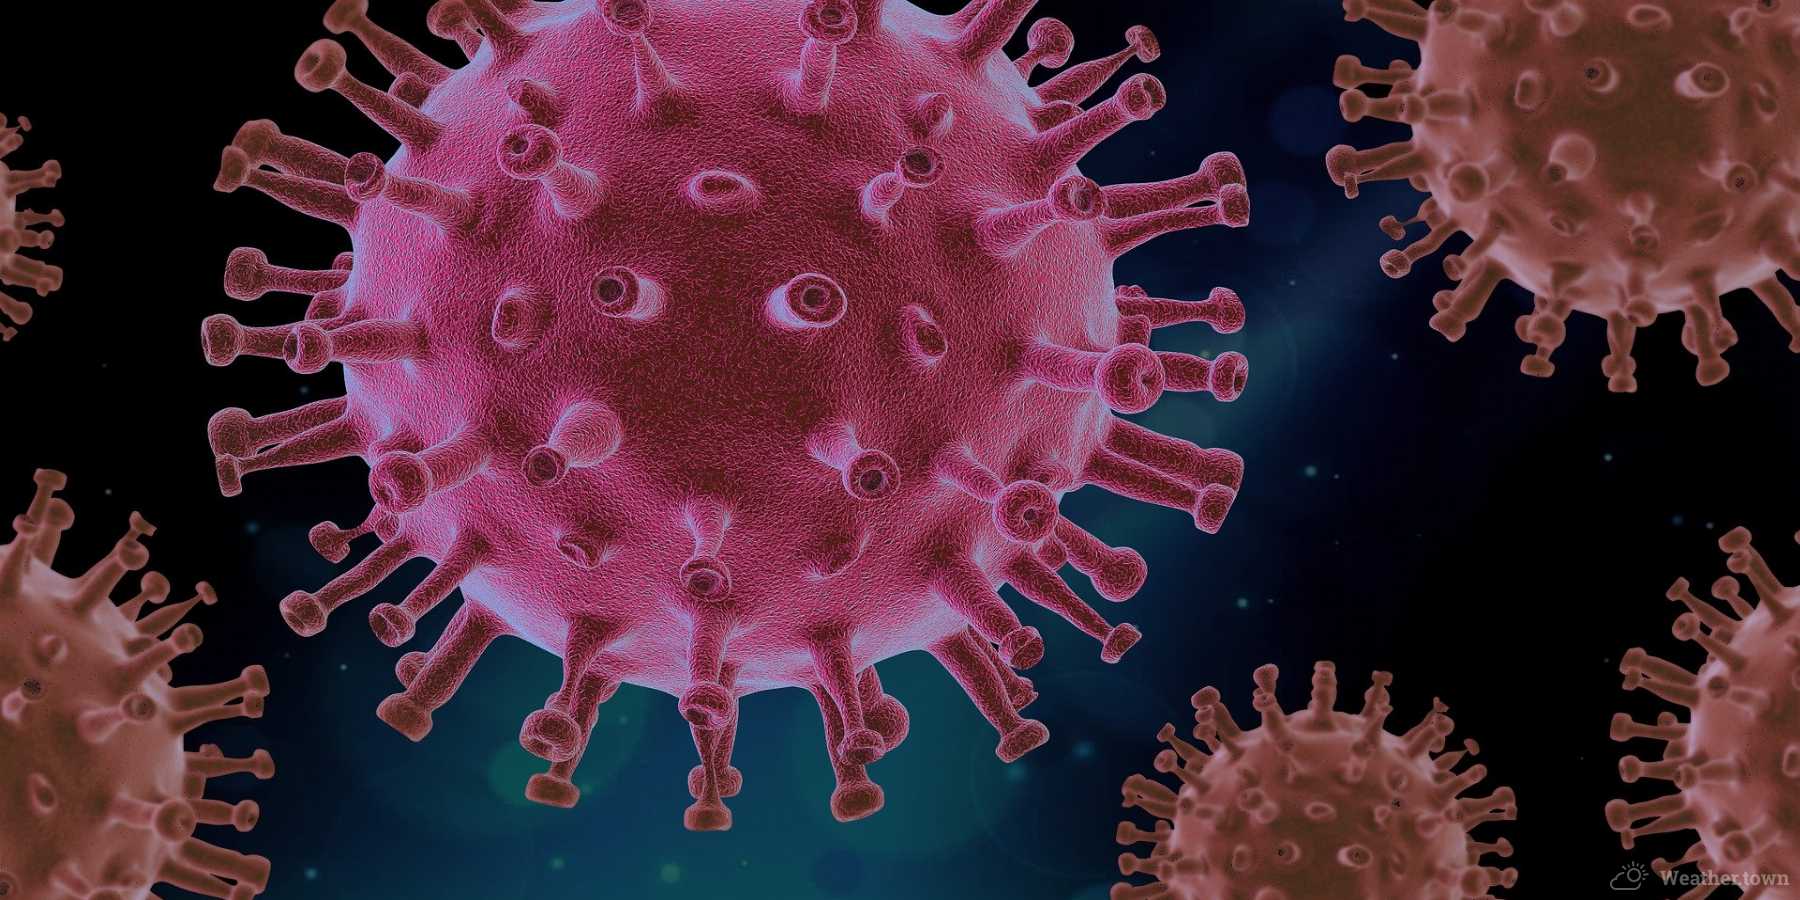 Will the coronavirus passed by summer?